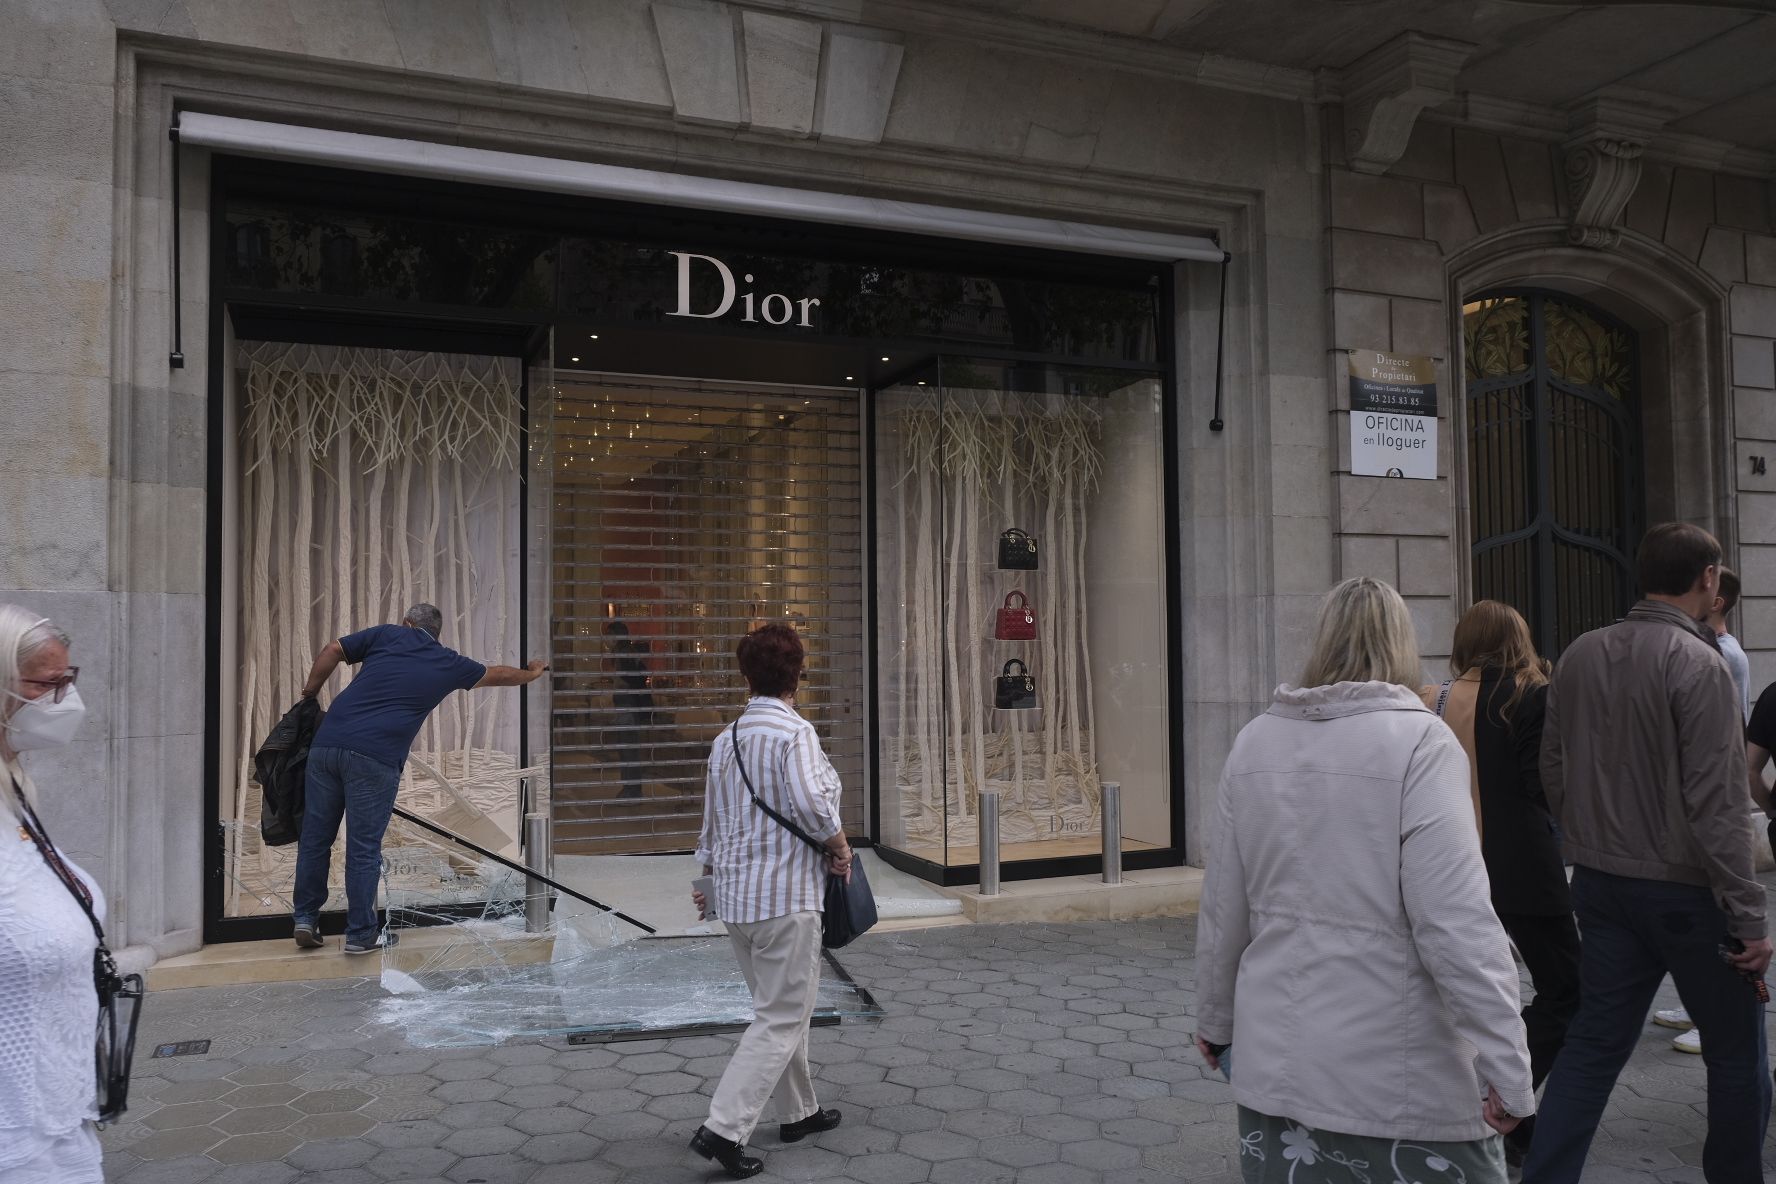 Asalto tienda Dior Passeig de Gracia / Carlos Baglietto